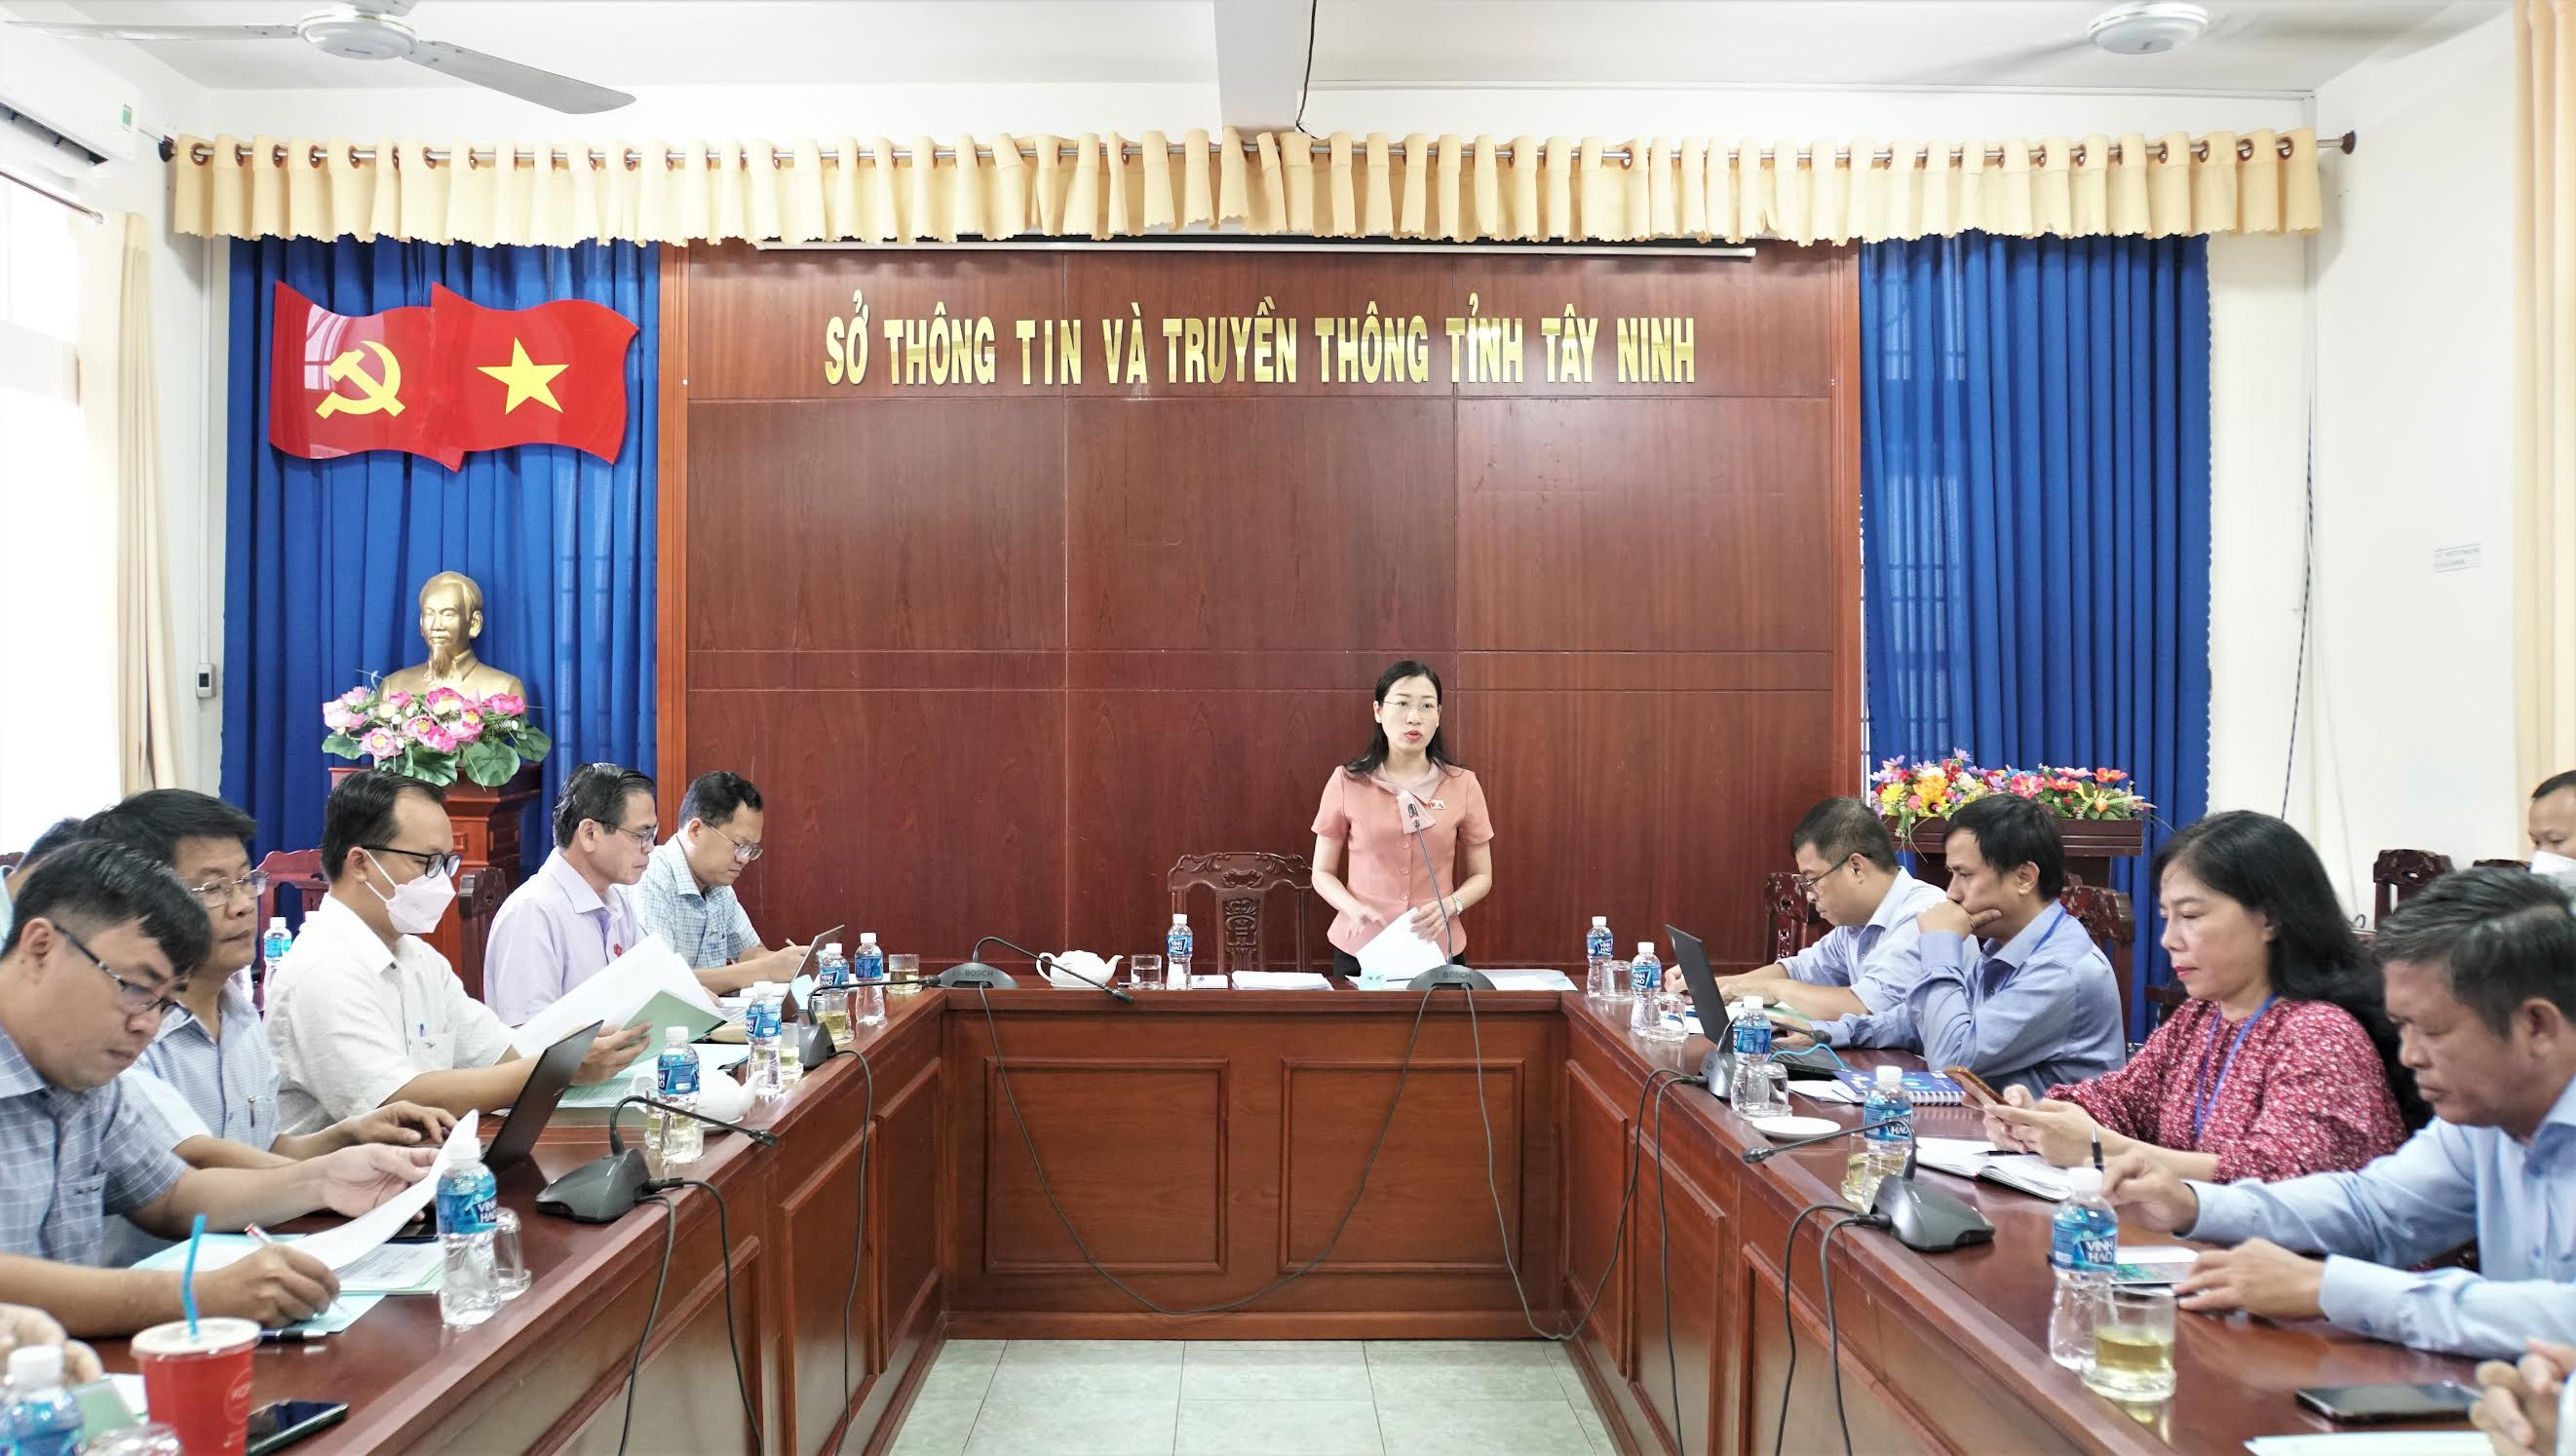 Tây Ninh: Những dấu ấn tích cực sau một năm thực hiện Nghị quyết Chuyển đổi số